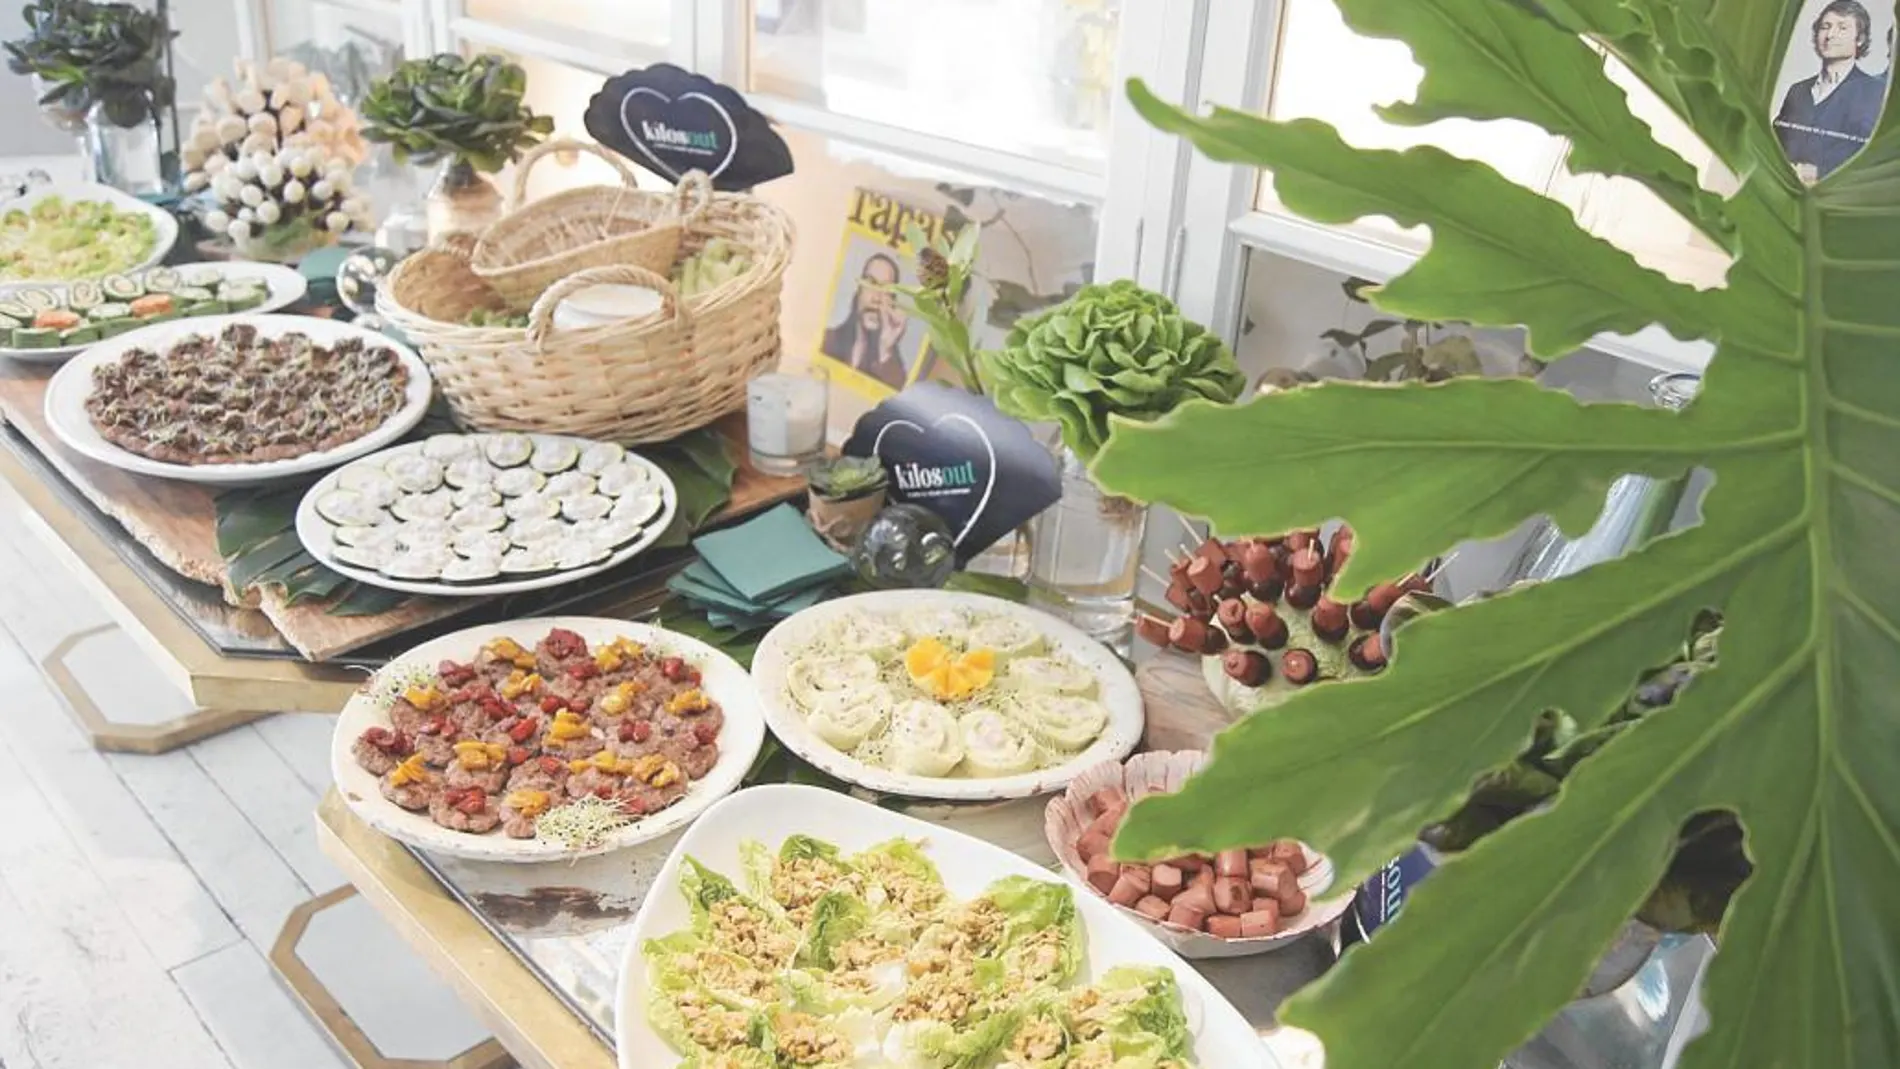 Los platos diseñados por Kilosout están basados en una dieta mediterránea y equilibrada, cuidando cubrir la base nutricional necesaria